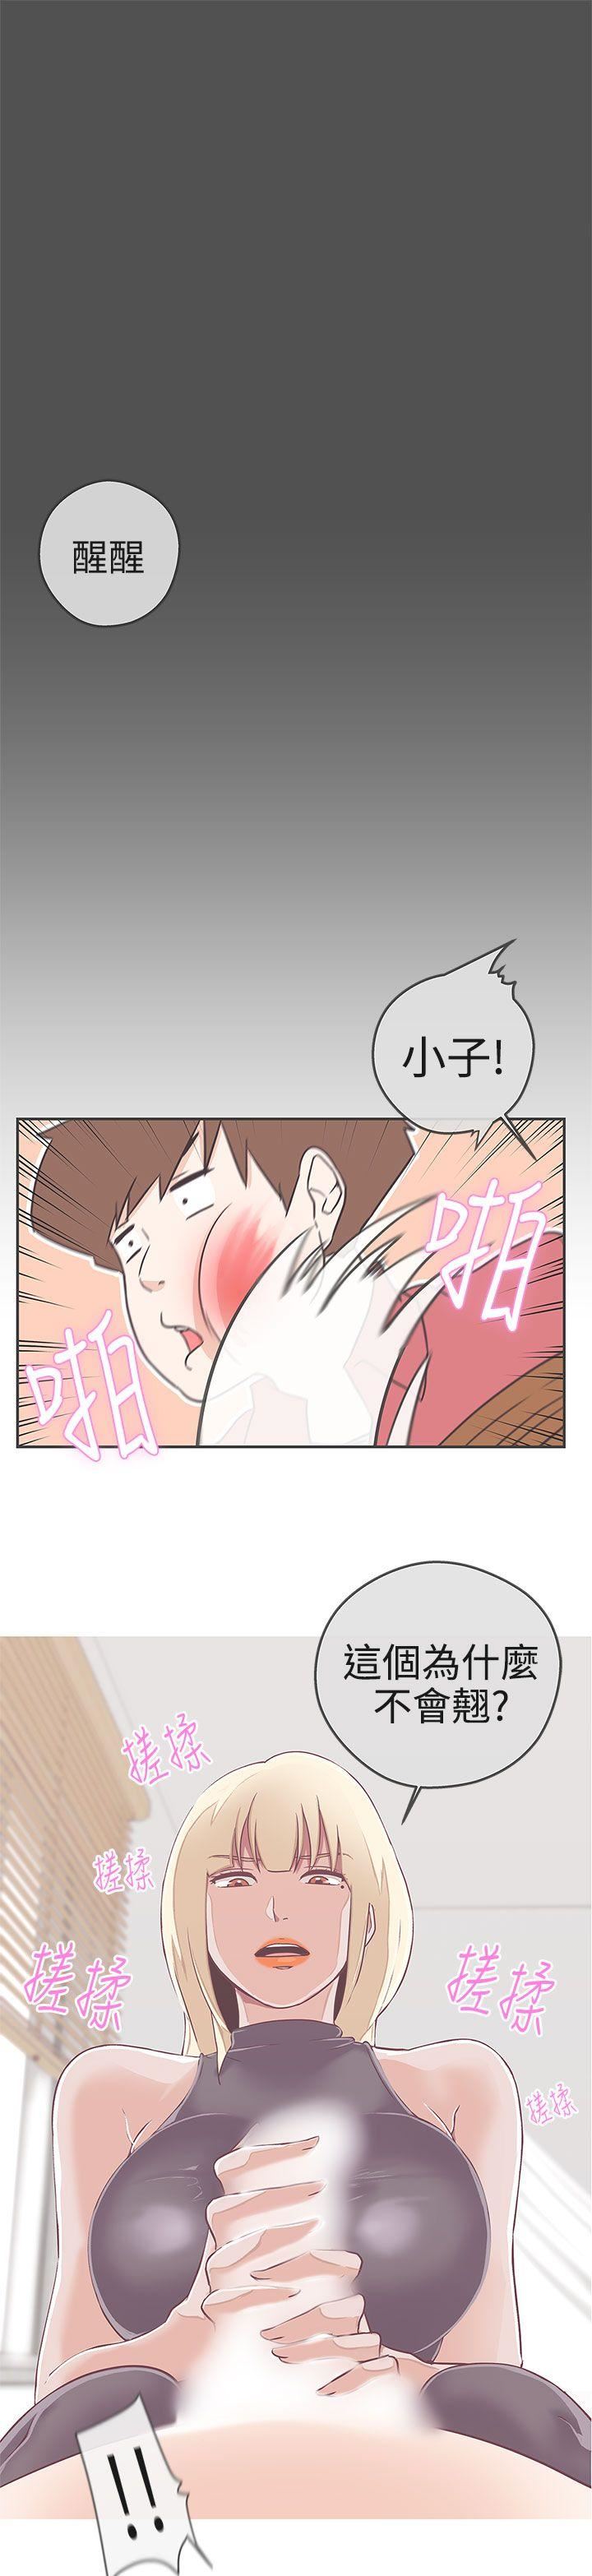 韩国污漫画 LOVE 愛的導航G 第19话 30